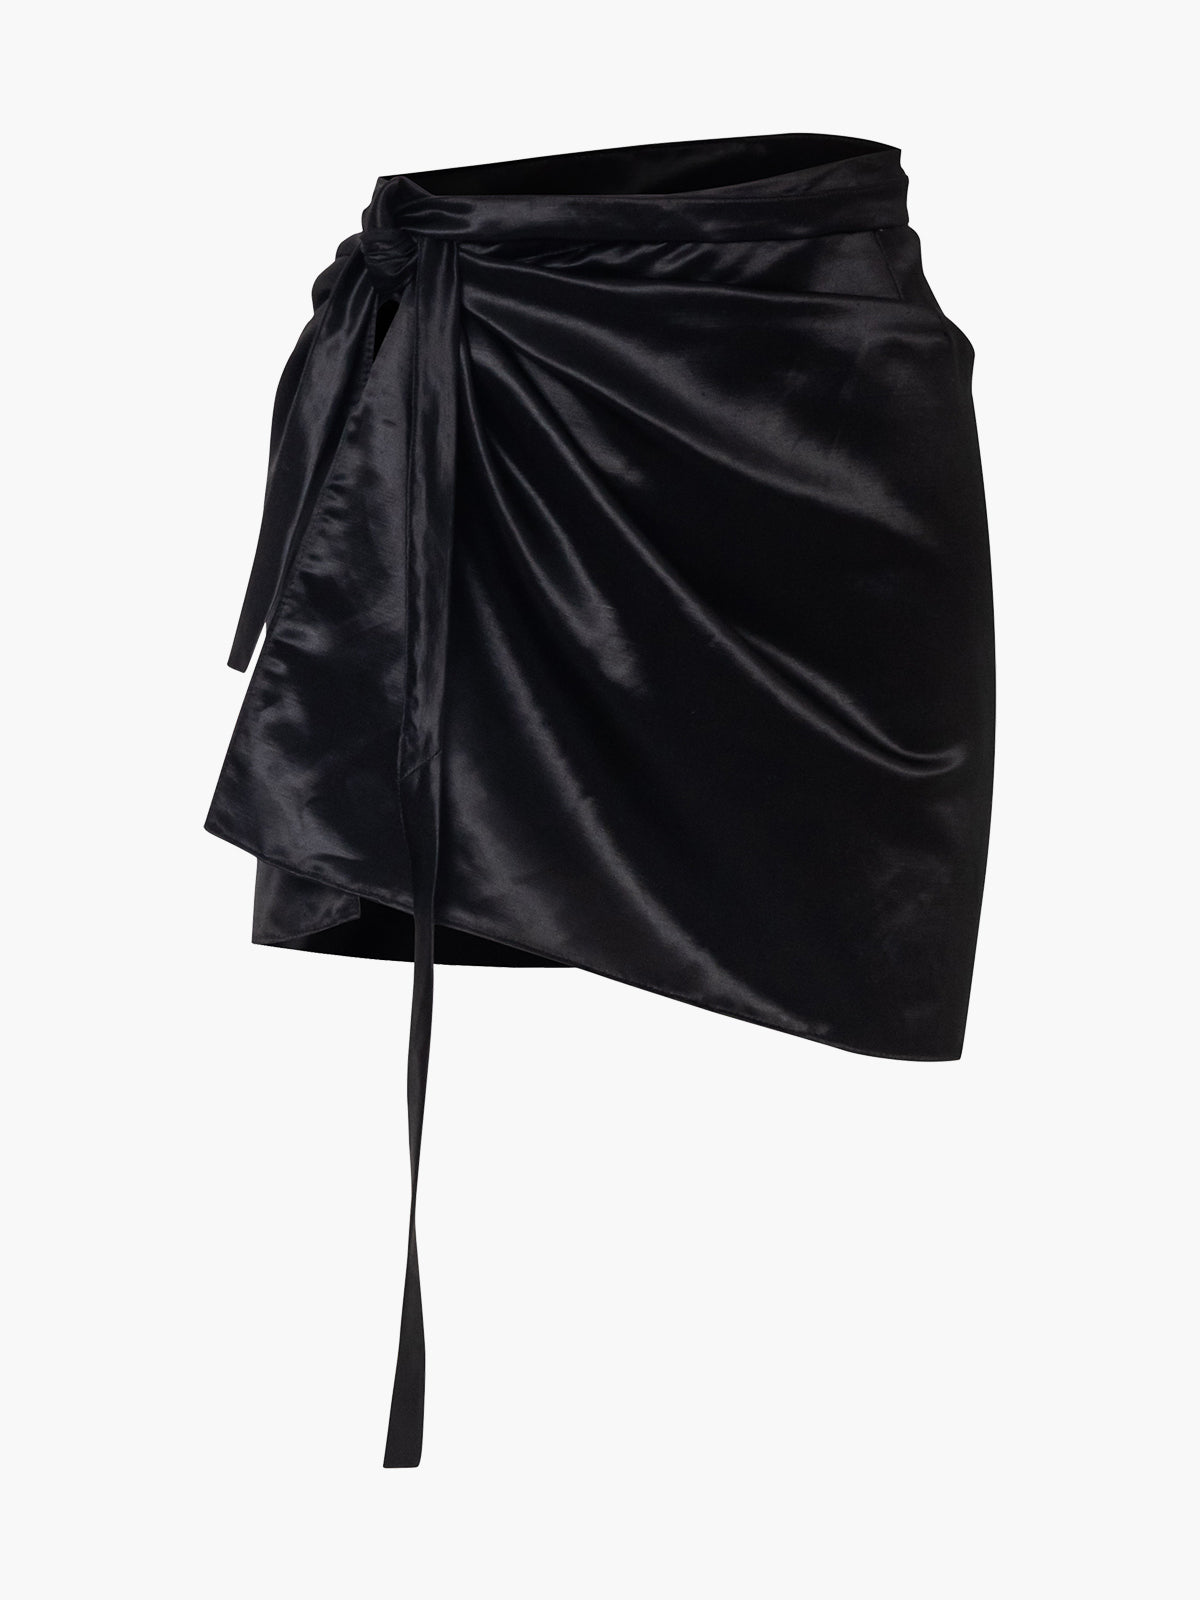 Bode Honeymoon Pareo Skirt | Black Bode Honeymoon Pareo Skirt | Black